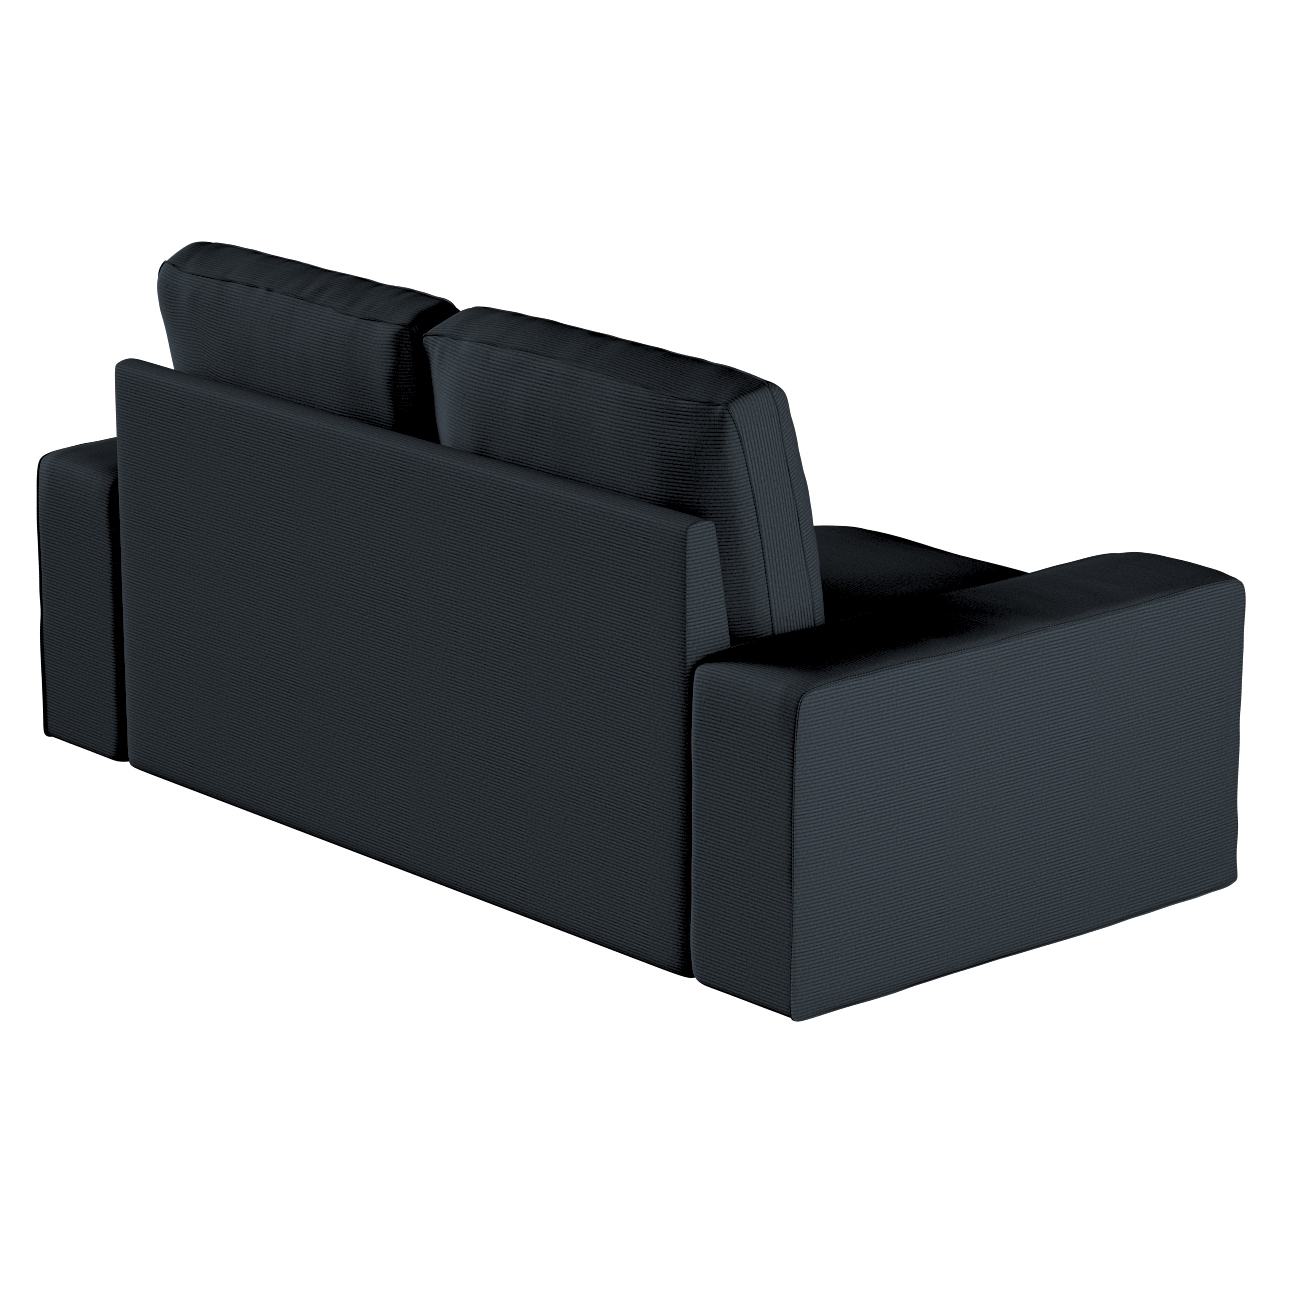 Bezug für Kivik 2-Sitzer Sofa, anthrazit, Bezug für Sofa Kivik 2-Sitzer, Ma günstig online kaufen